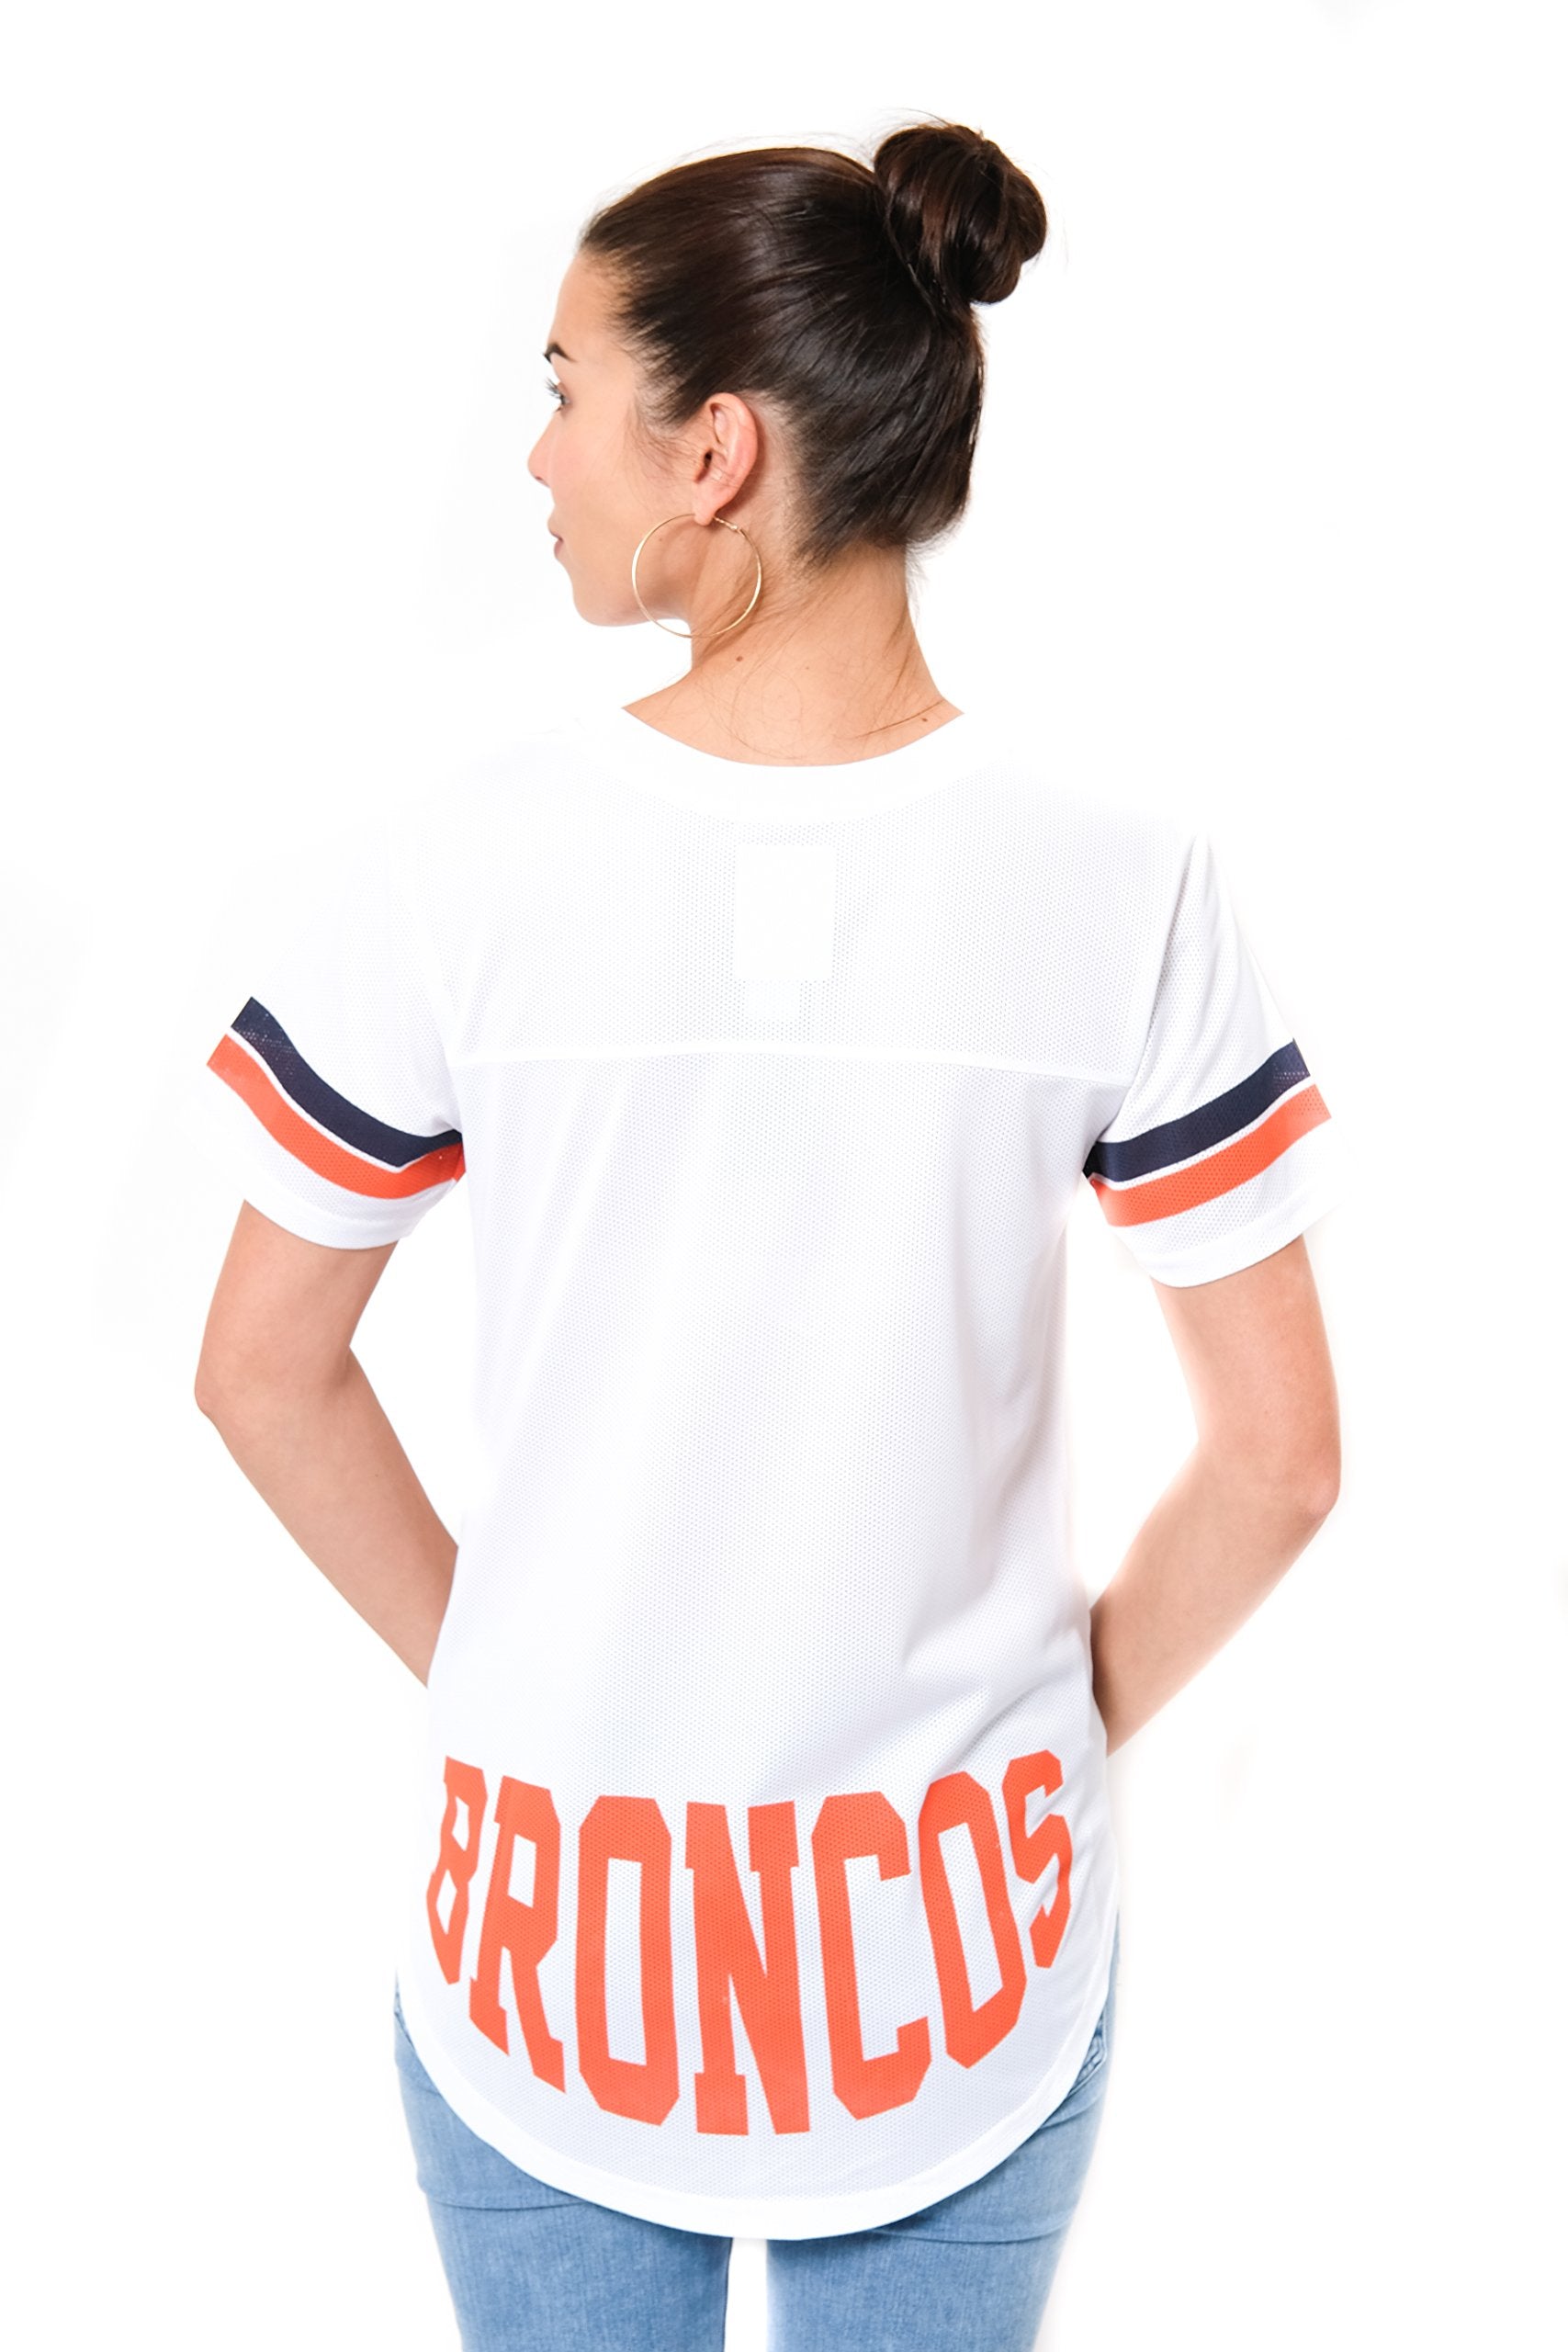 Ultra Game NFL Denver Broncos Womens Soft Mesh Jersey Varsity Tee Shirt|Denver Broncos - UltraGameShop